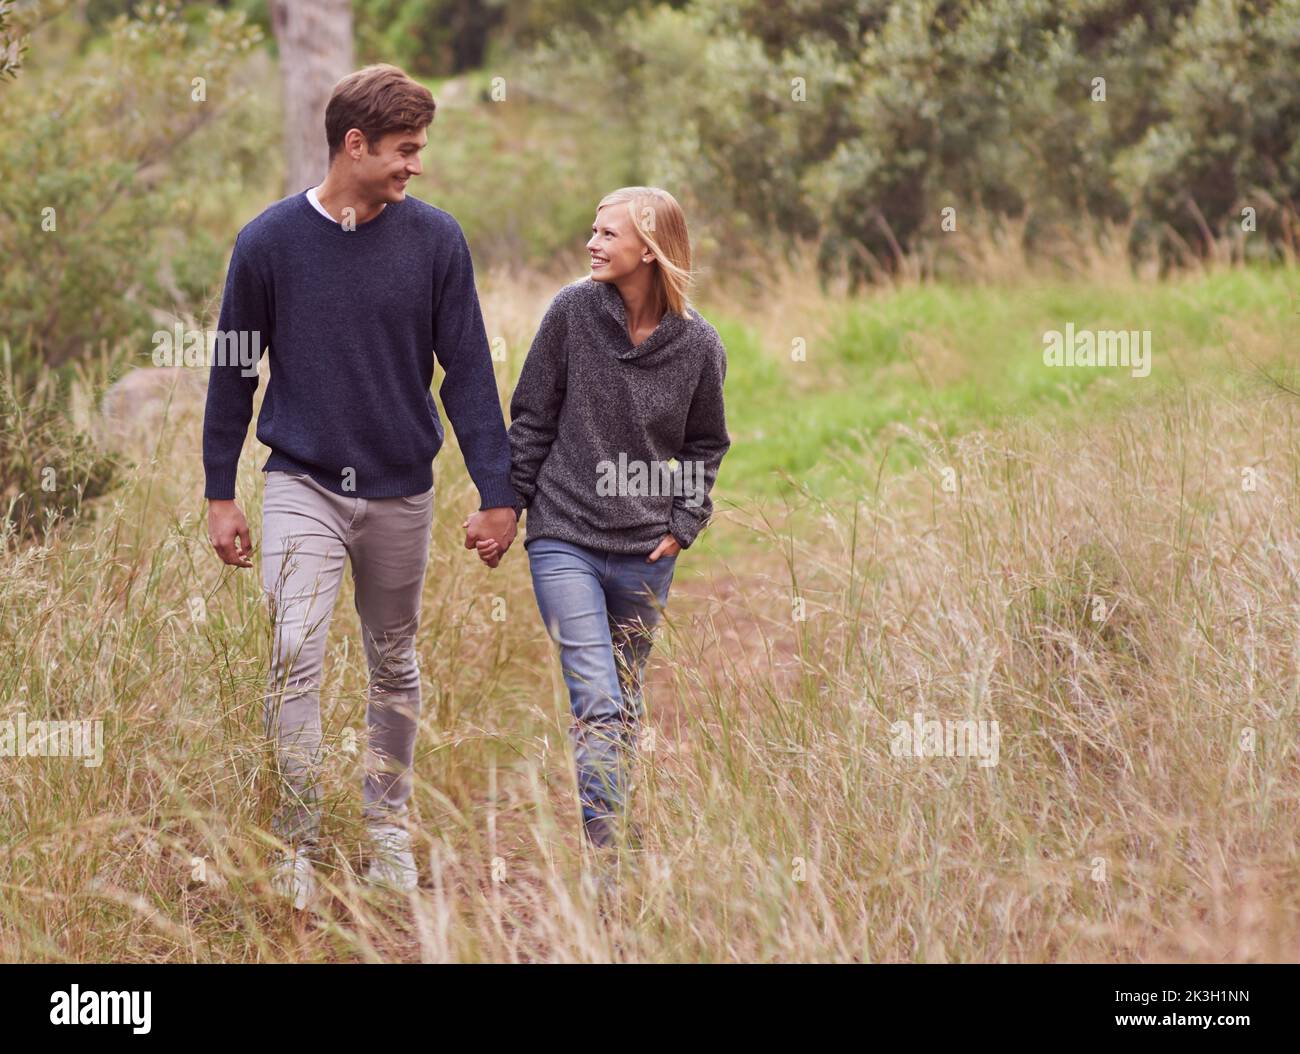 Paseo romántico por el campo. Una joven pareja paseando mano en mano a través de un prado. Foto de stock